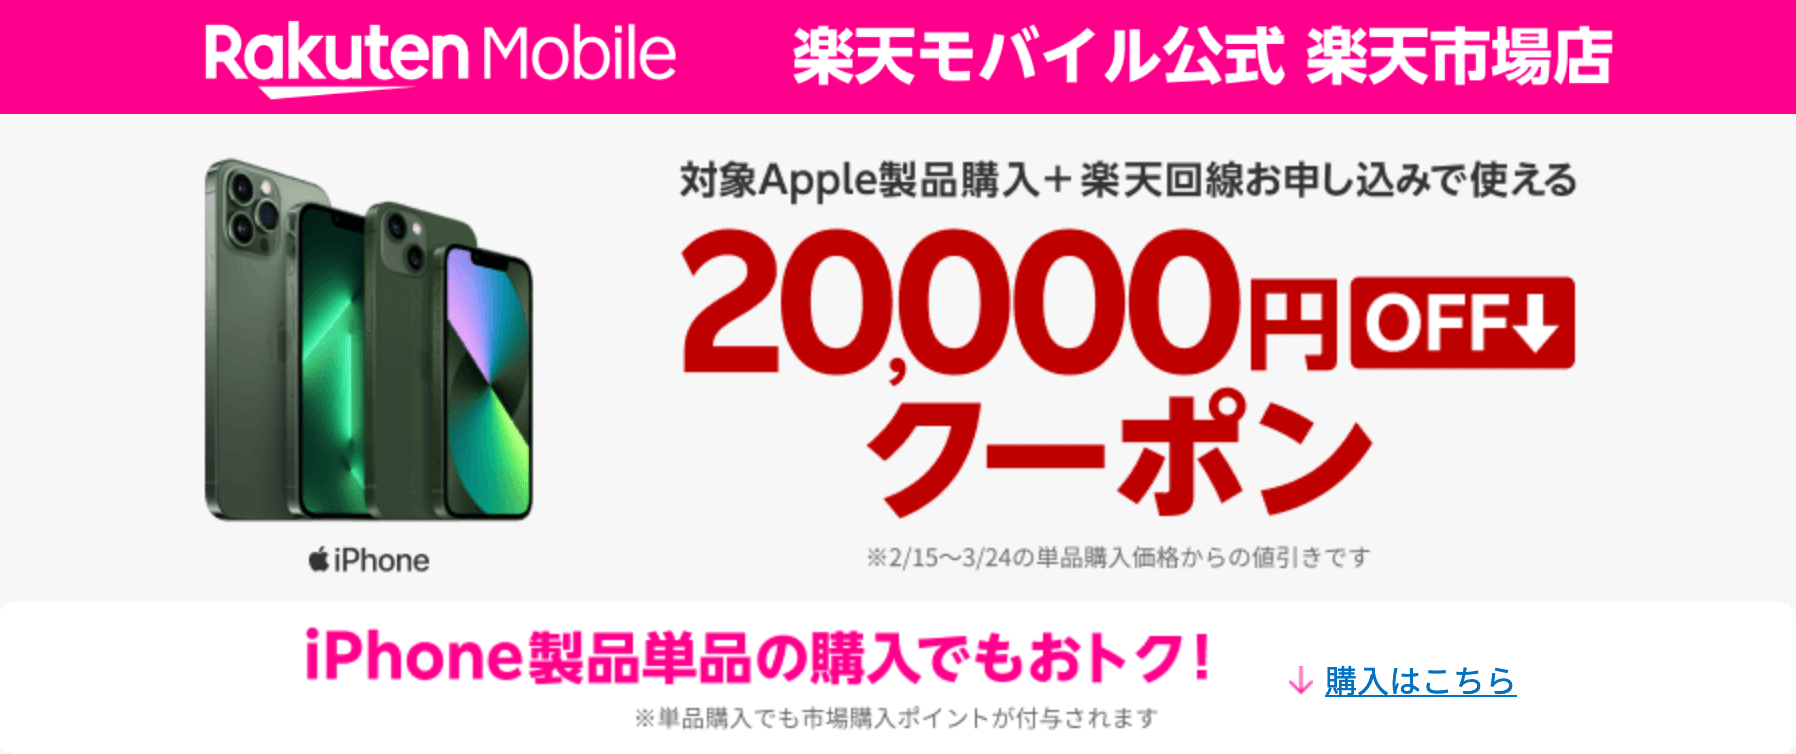 【楽天モバイル公式】iPhone・Androidの機種代金が最大20,000円割引